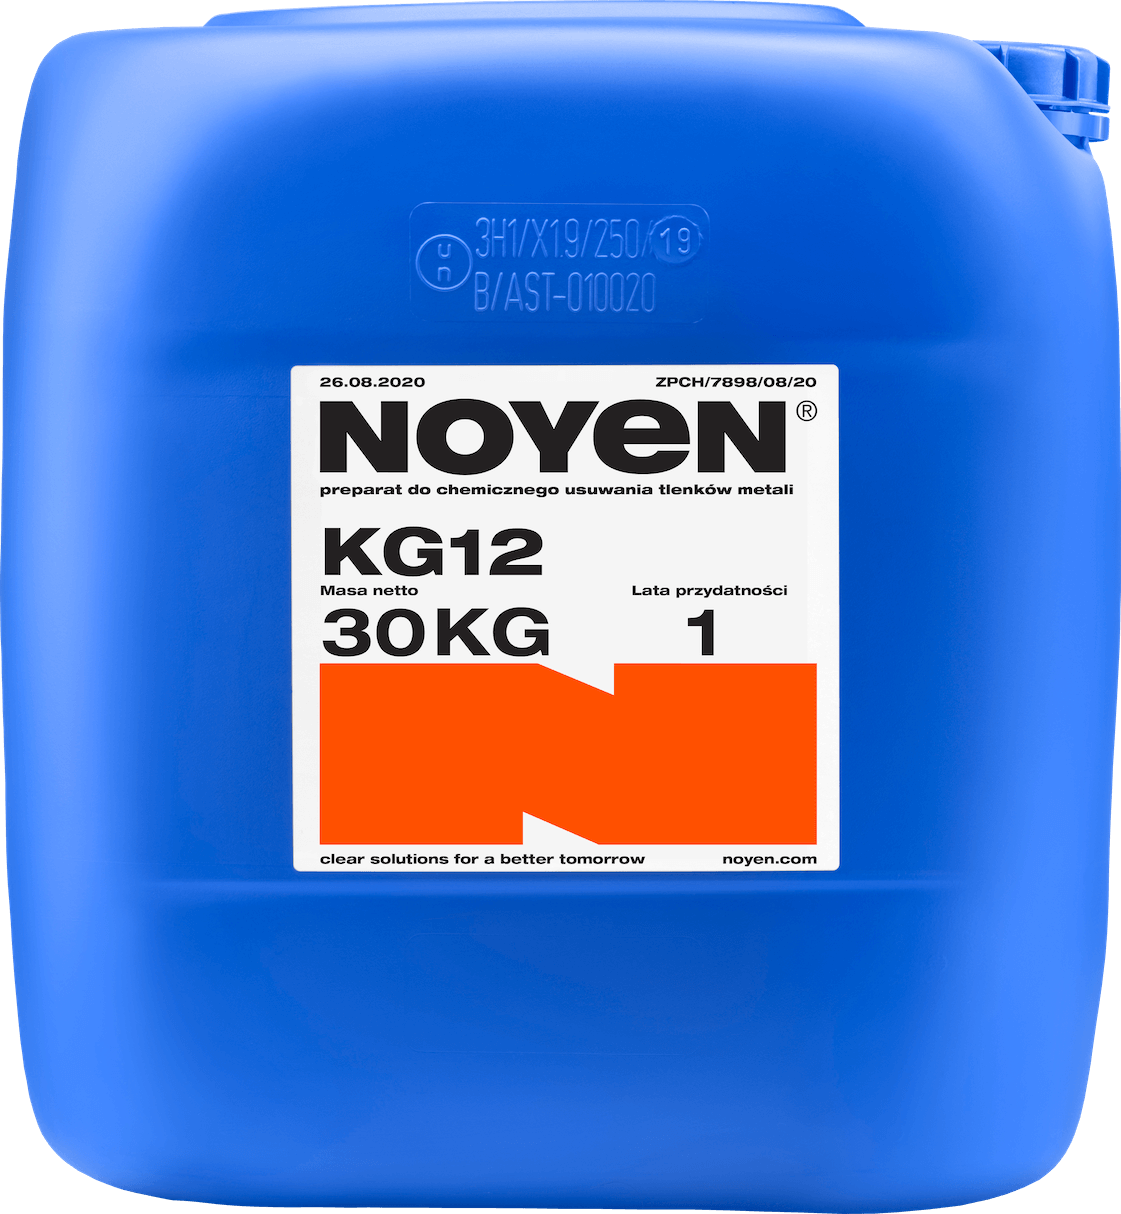 KG12 NOYEN 30 KG preparat do chemicznego usuwania tlenków metali w niebieskim kanistrze